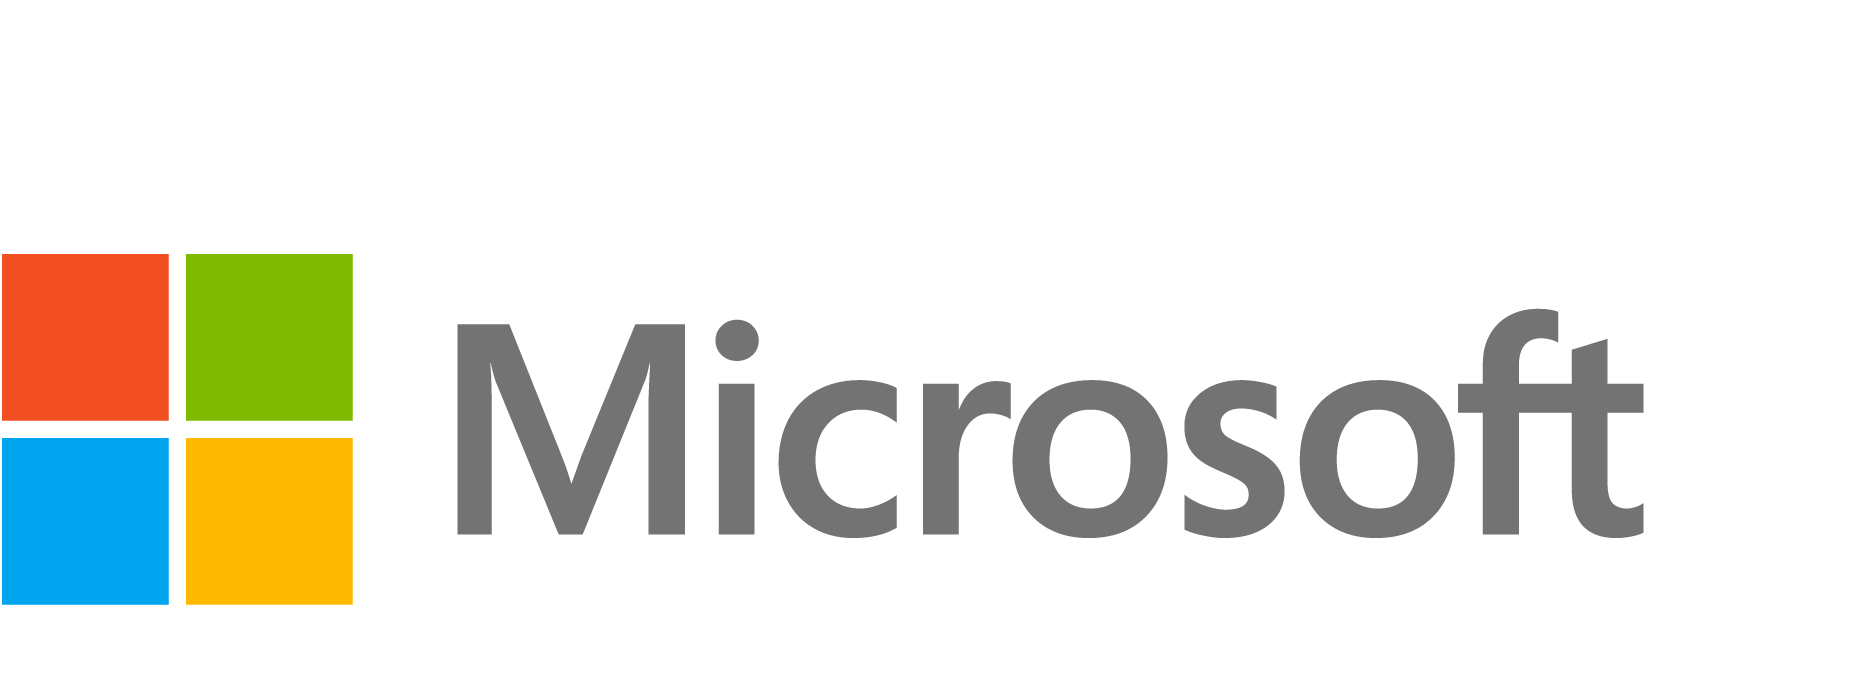 Microsoft Logo Png - Free Transparent PNG Logos